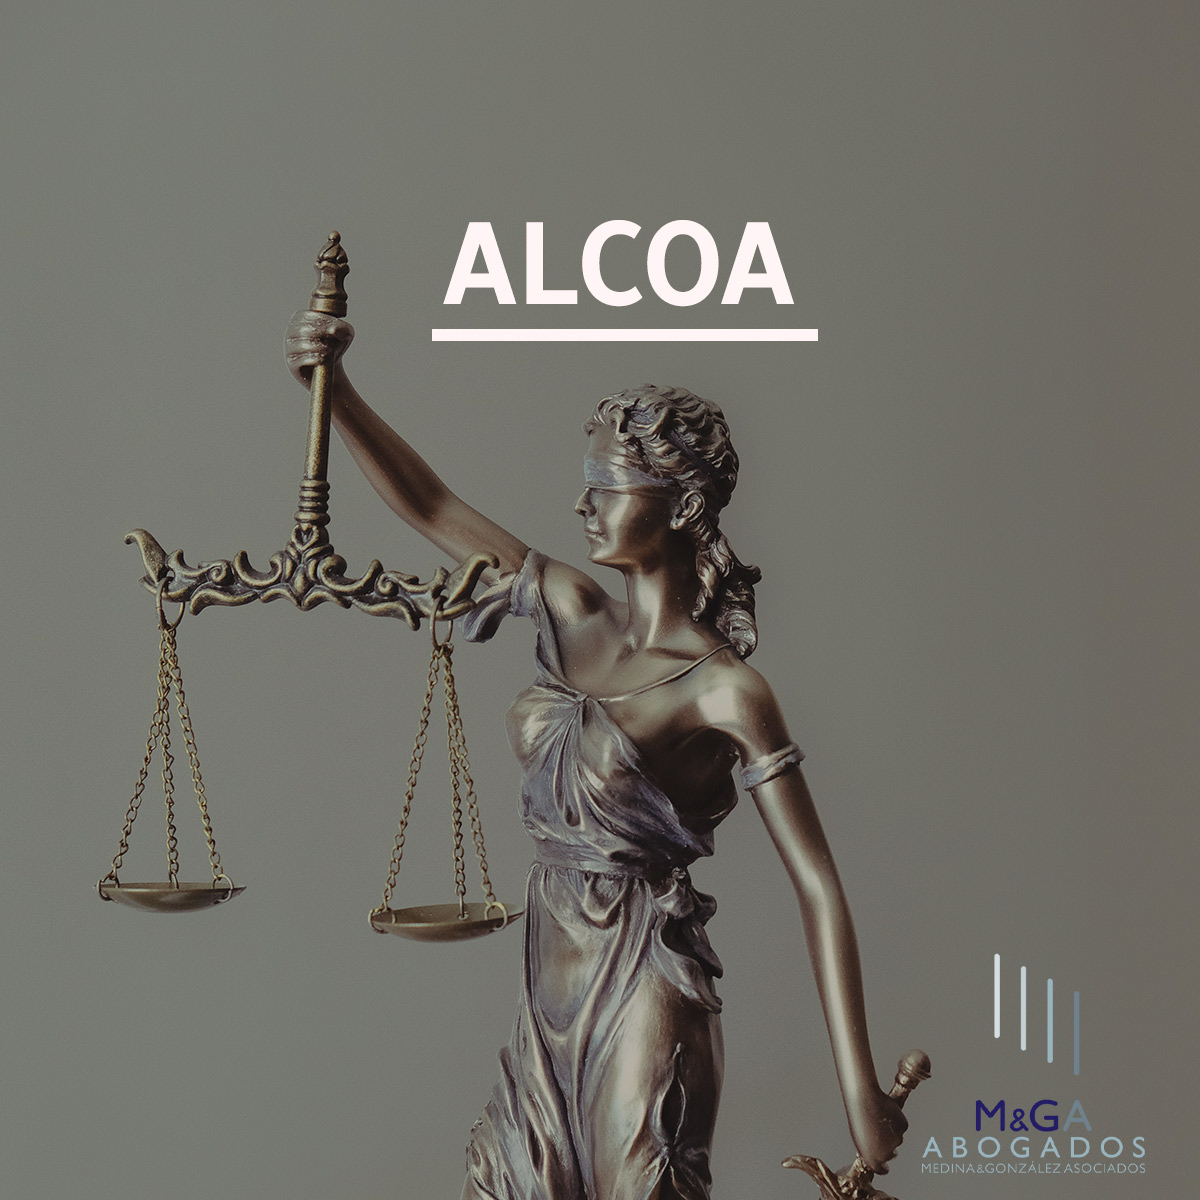 Admitida una querella presentada contra la venta de las plantas de Alcoa en España